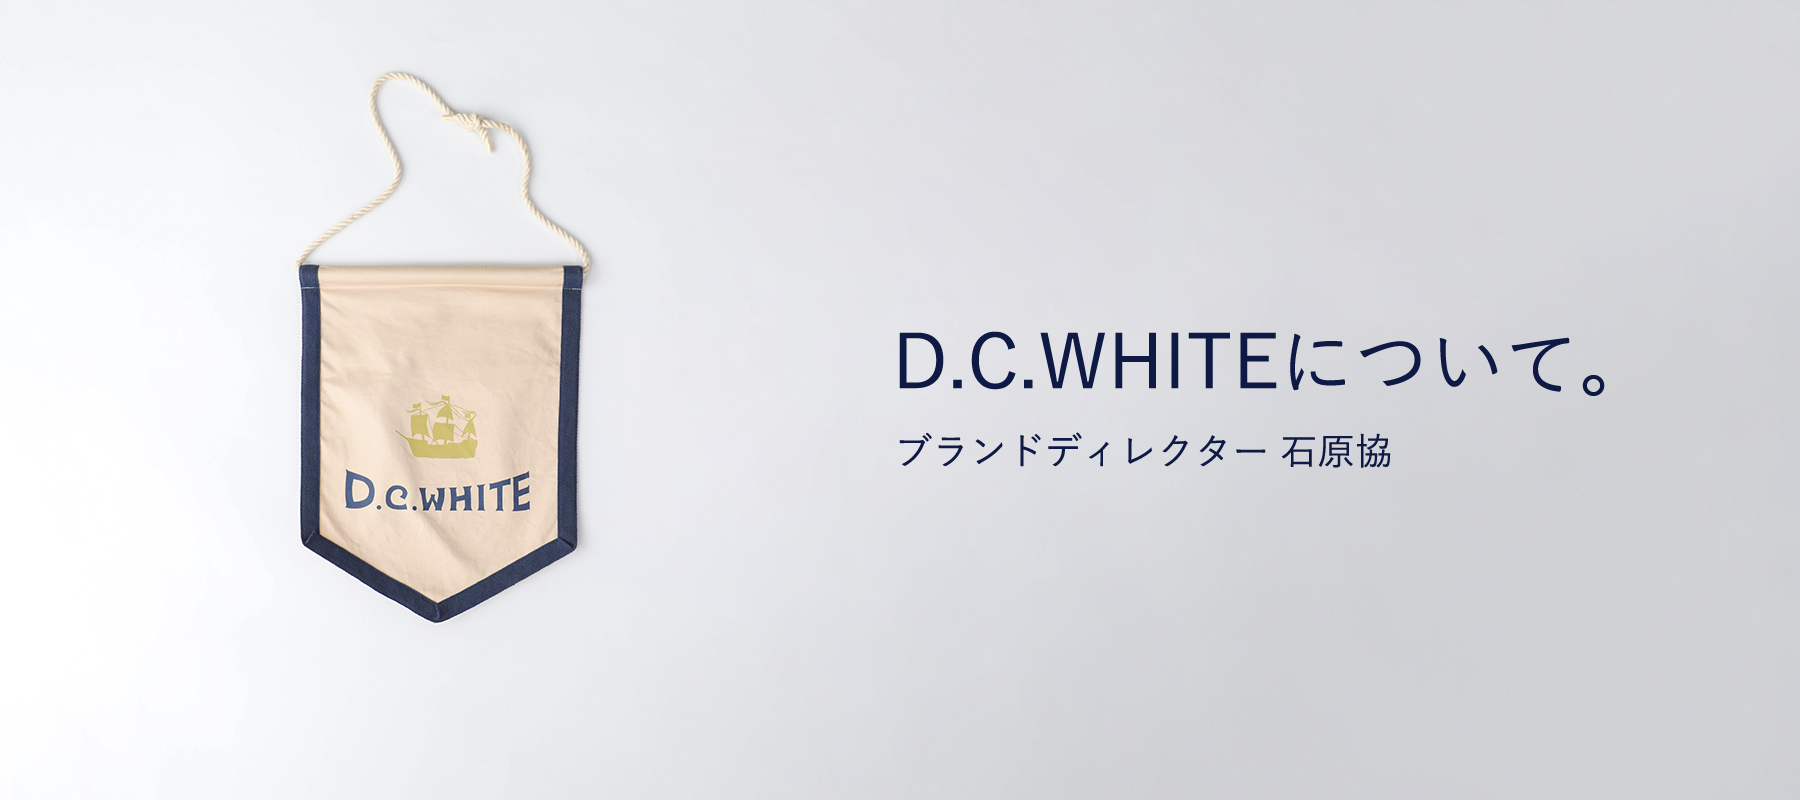 D.C.WHITE について / ブランドディレクター 石原協